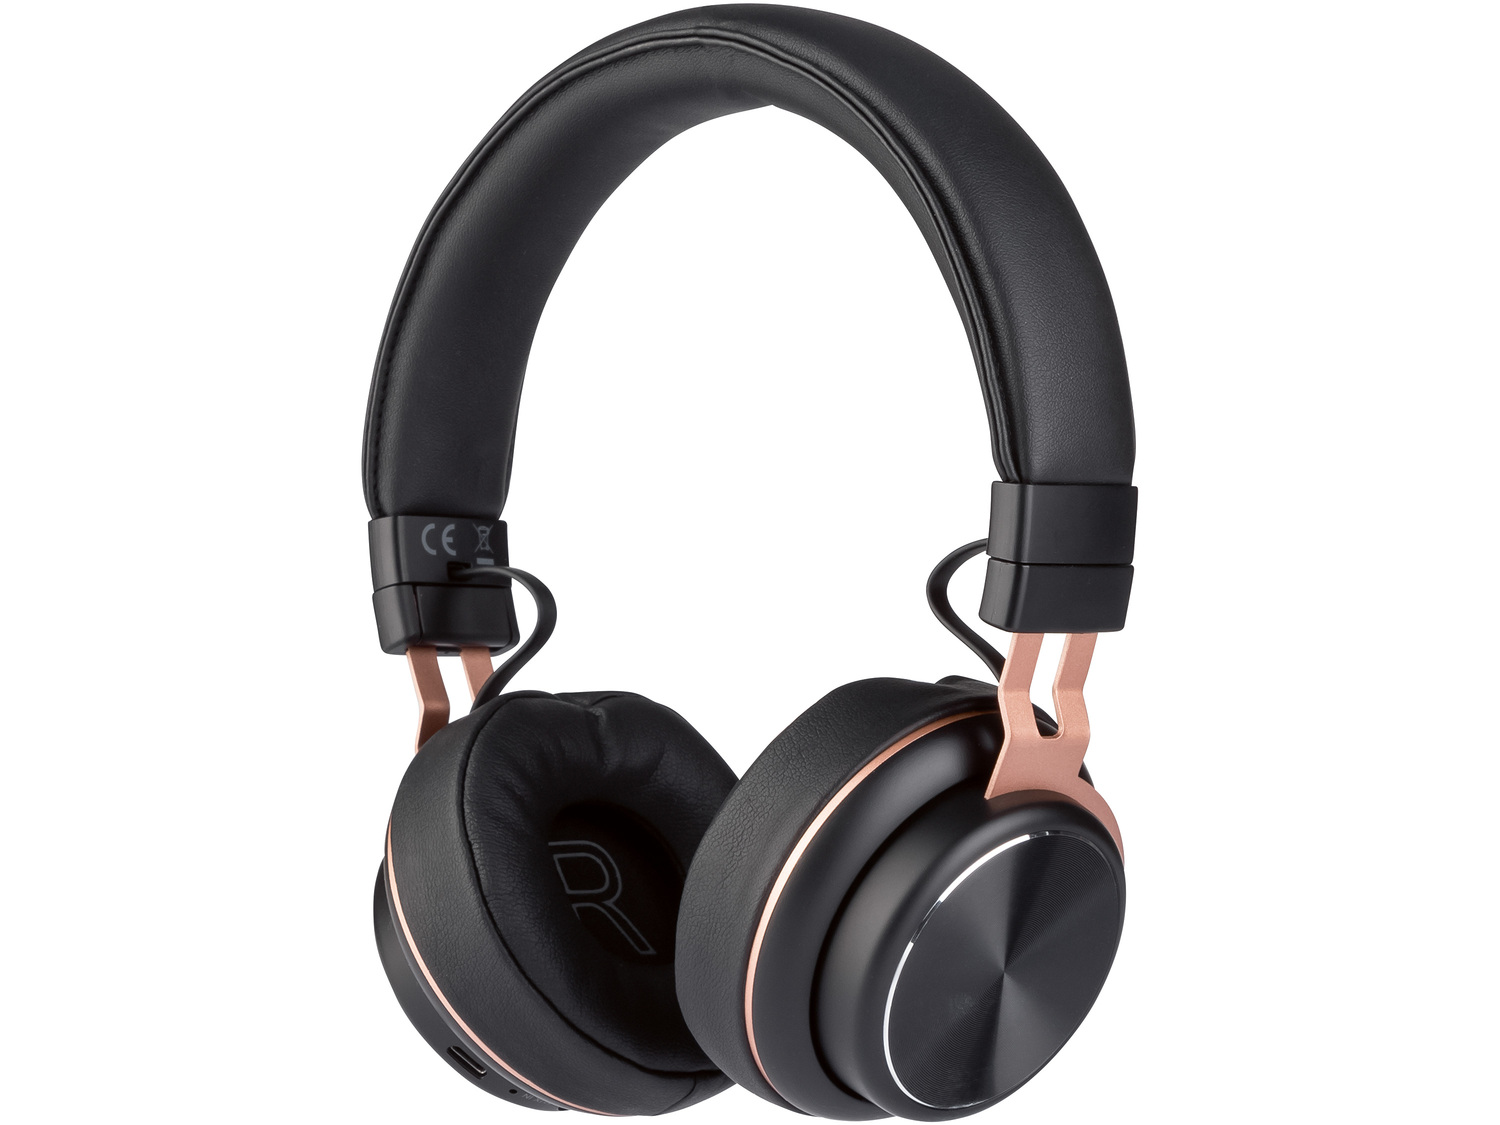 Słuchawki nauszne bezprzewodowe z Bluetooth® , cena 79,00 PLN 
różne wzory
Opis

- ...